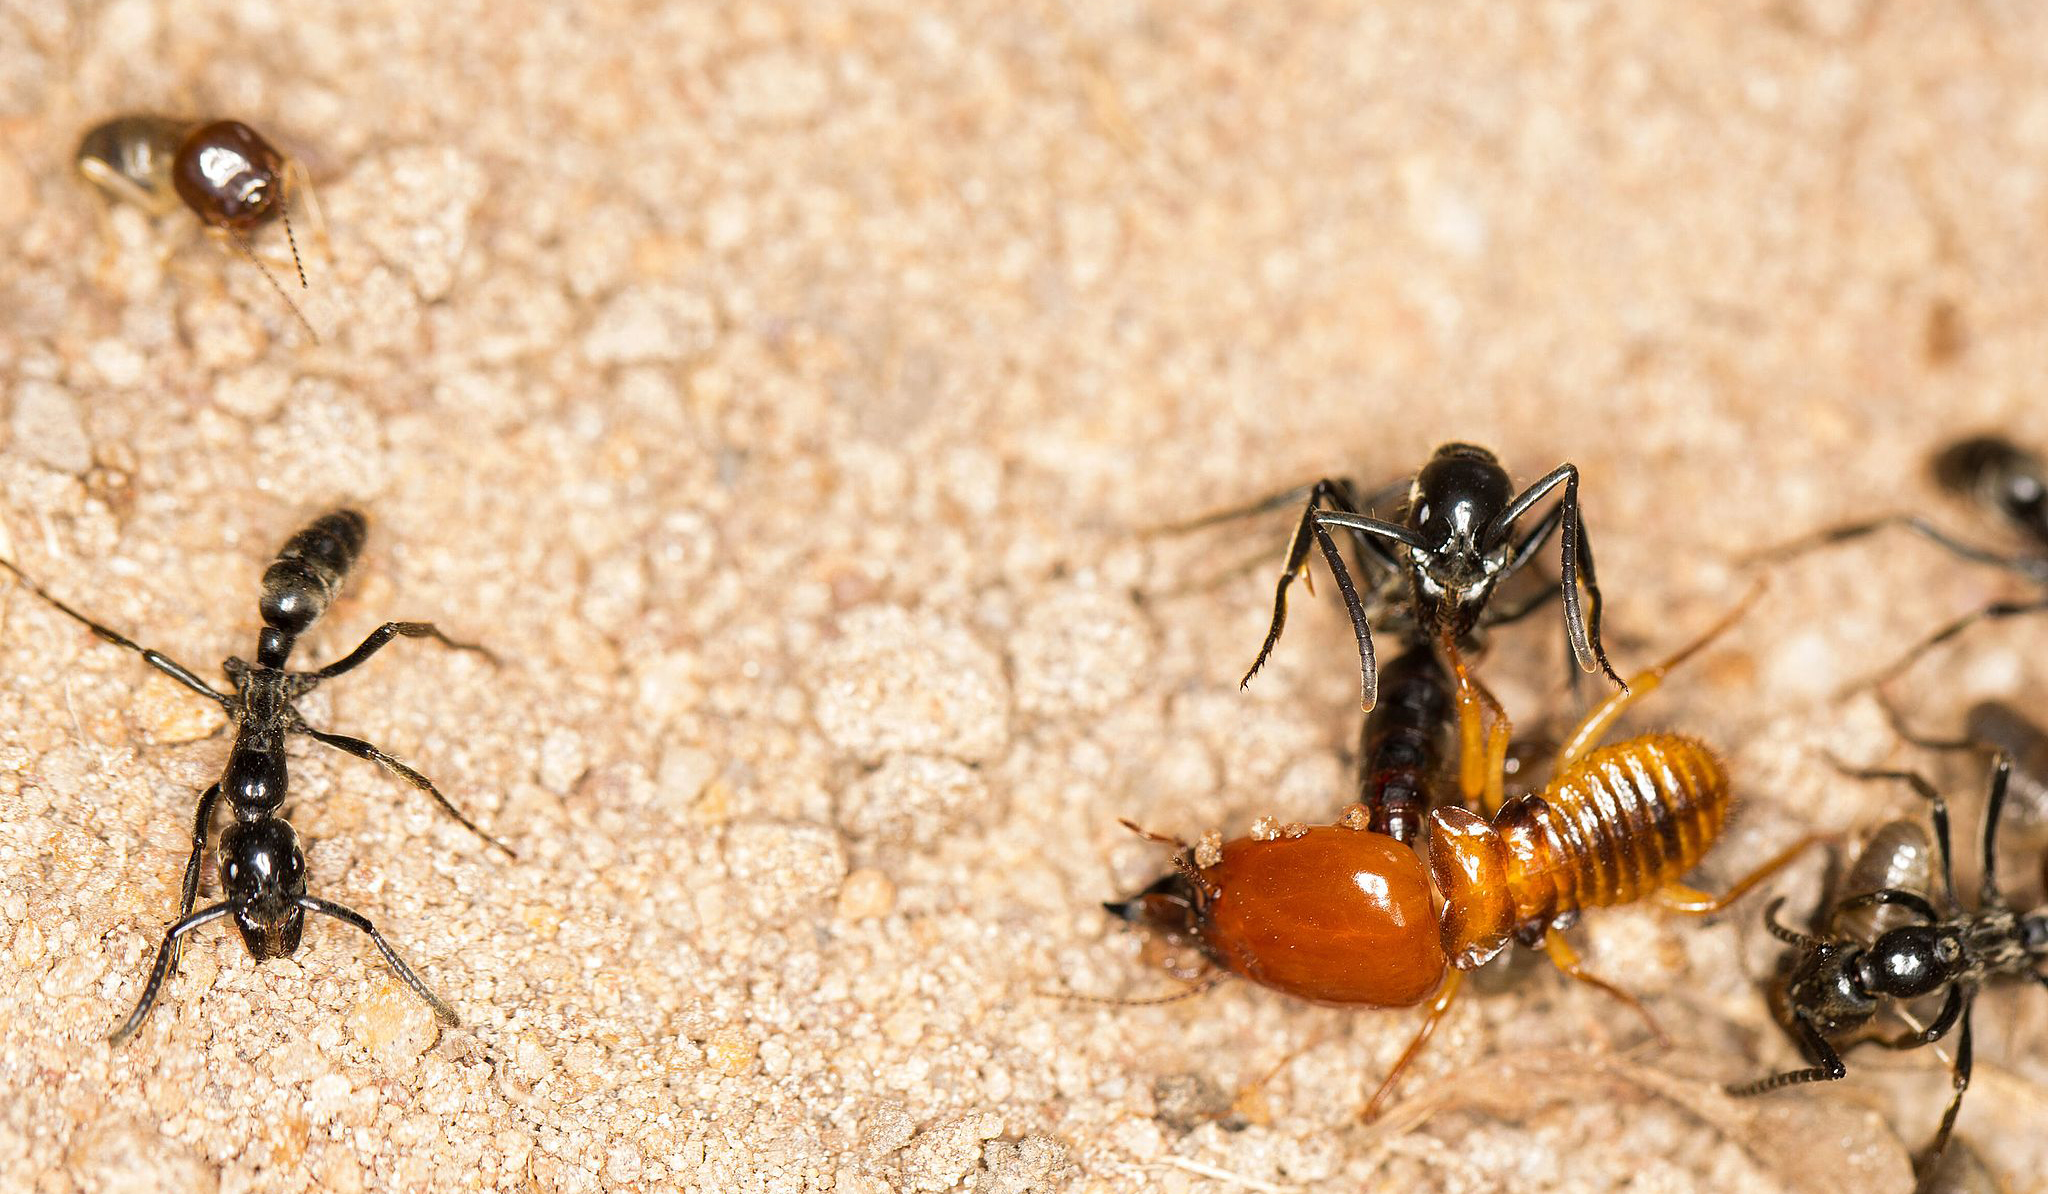 Formiga do Saara trata feridas produzindo seu próprio antibiótico